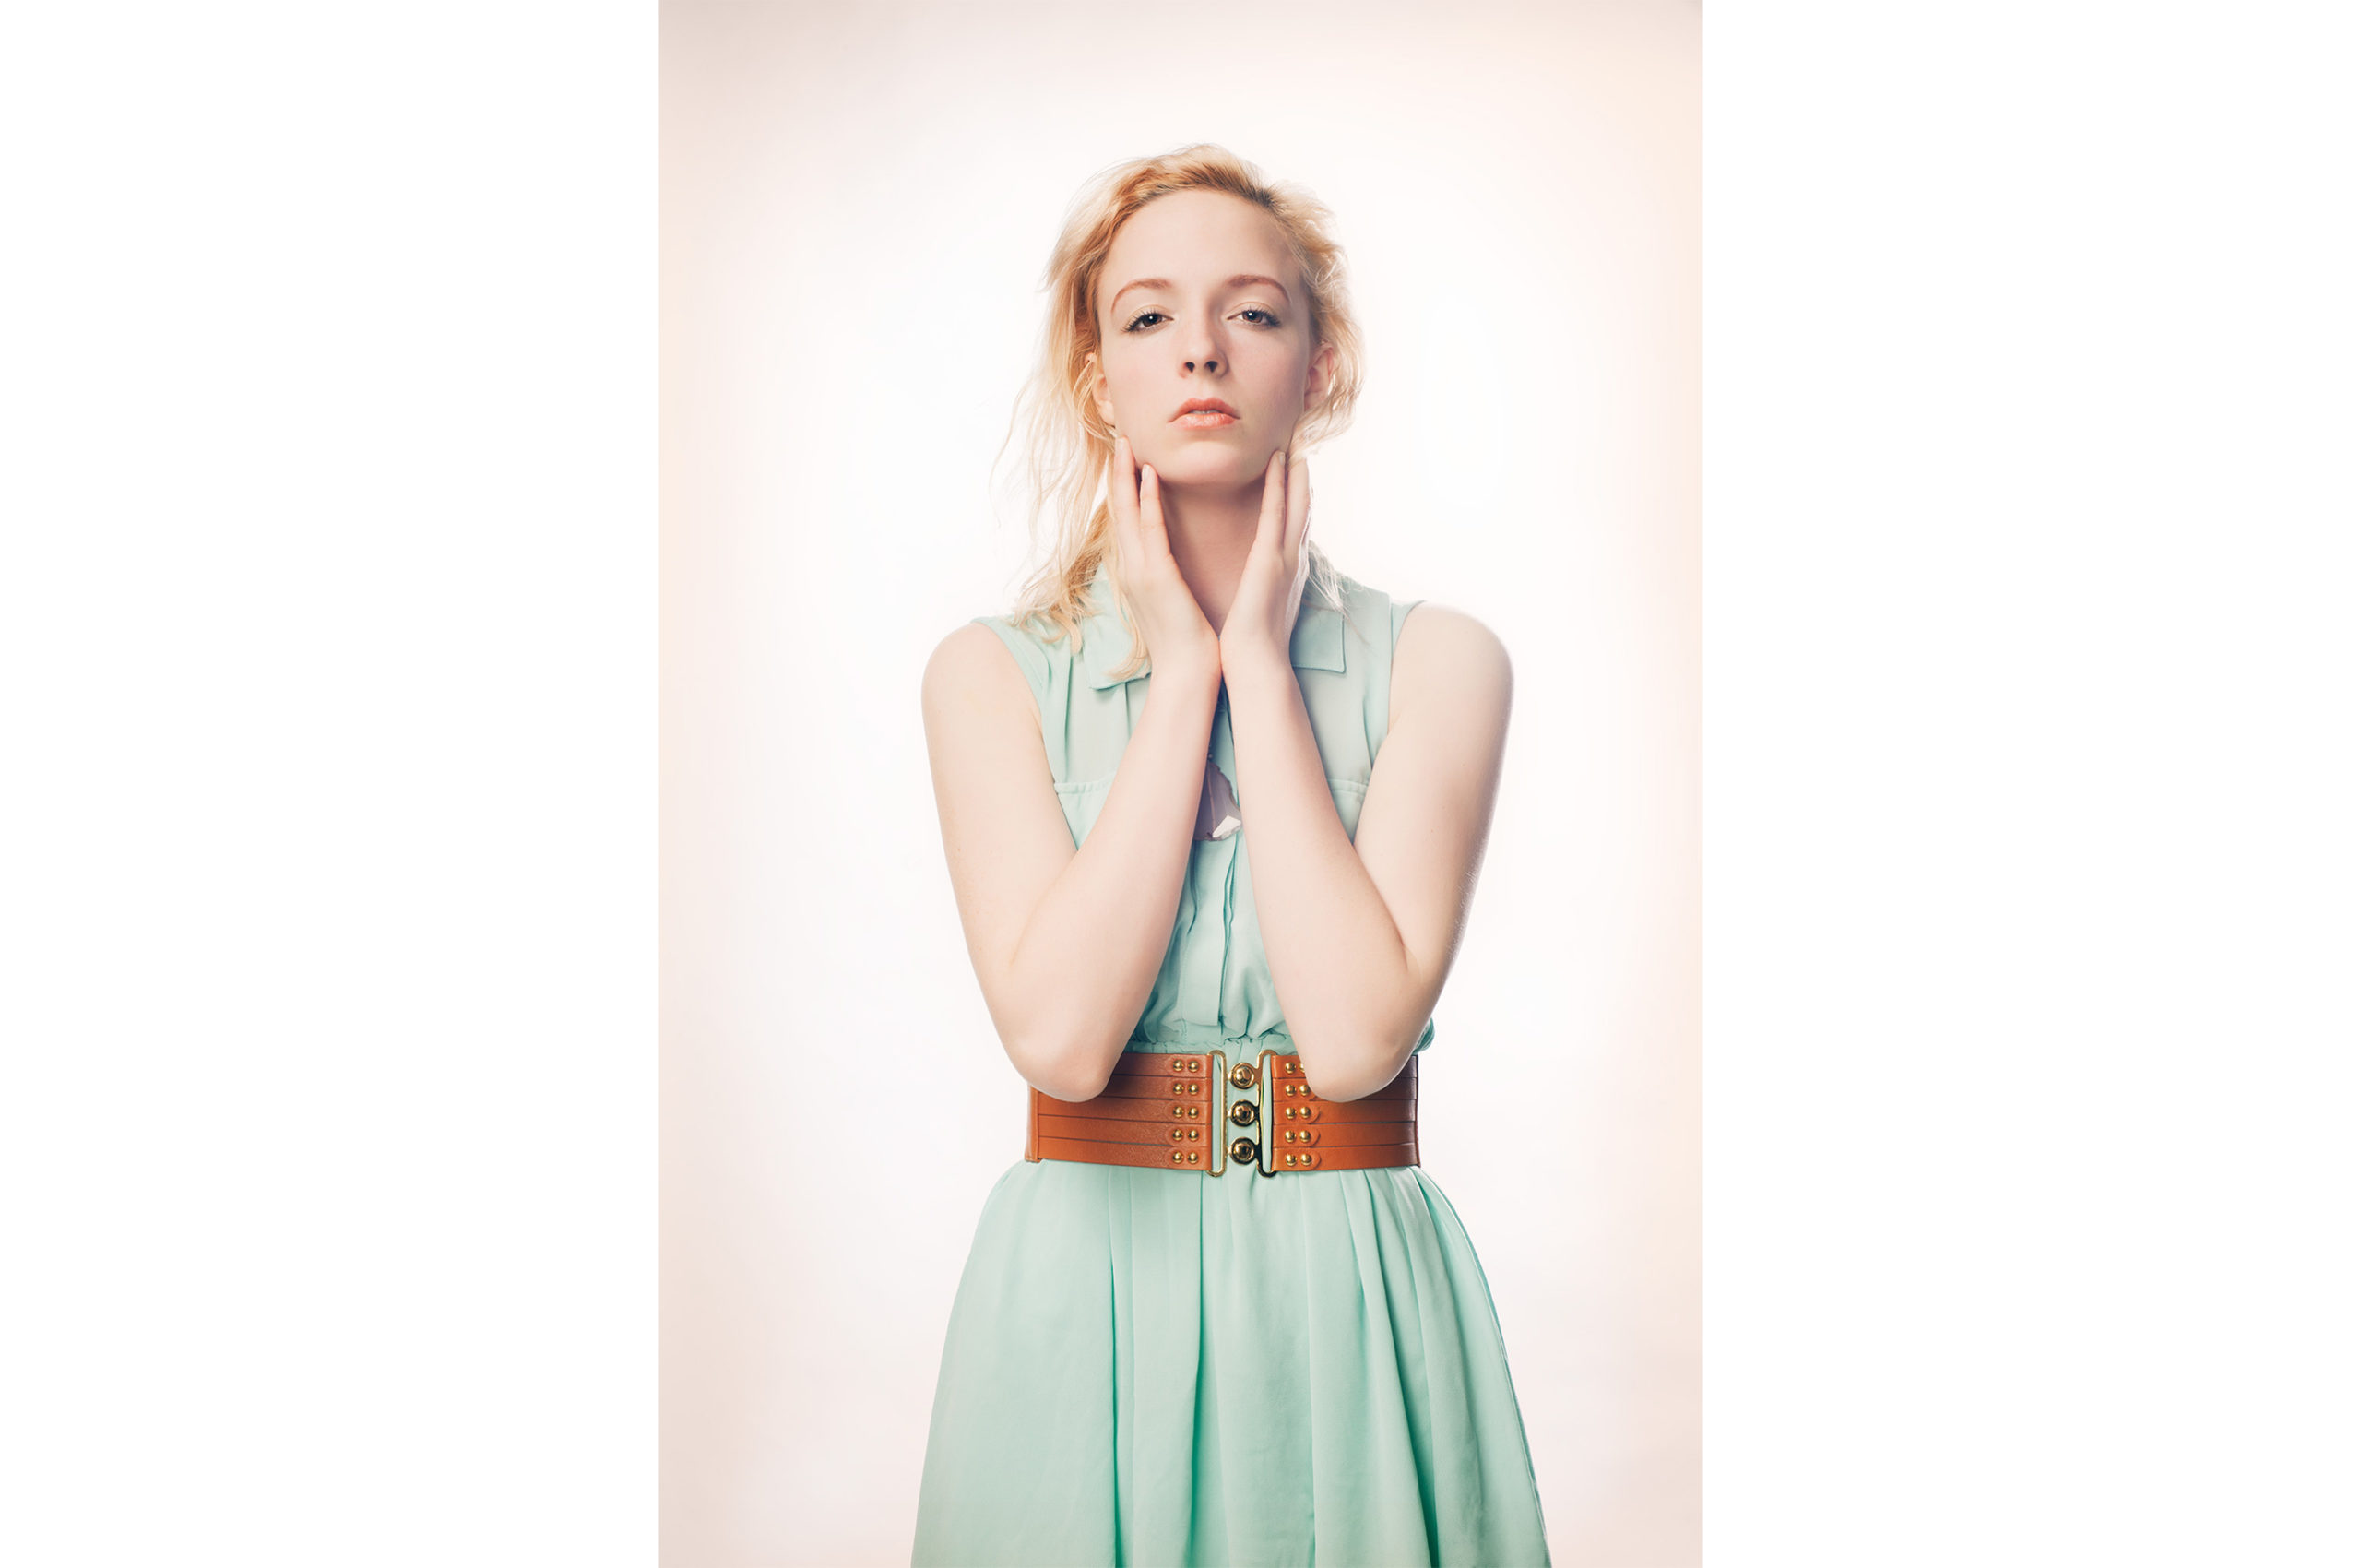 Second in Series, Grace in Green Dress, Portrait